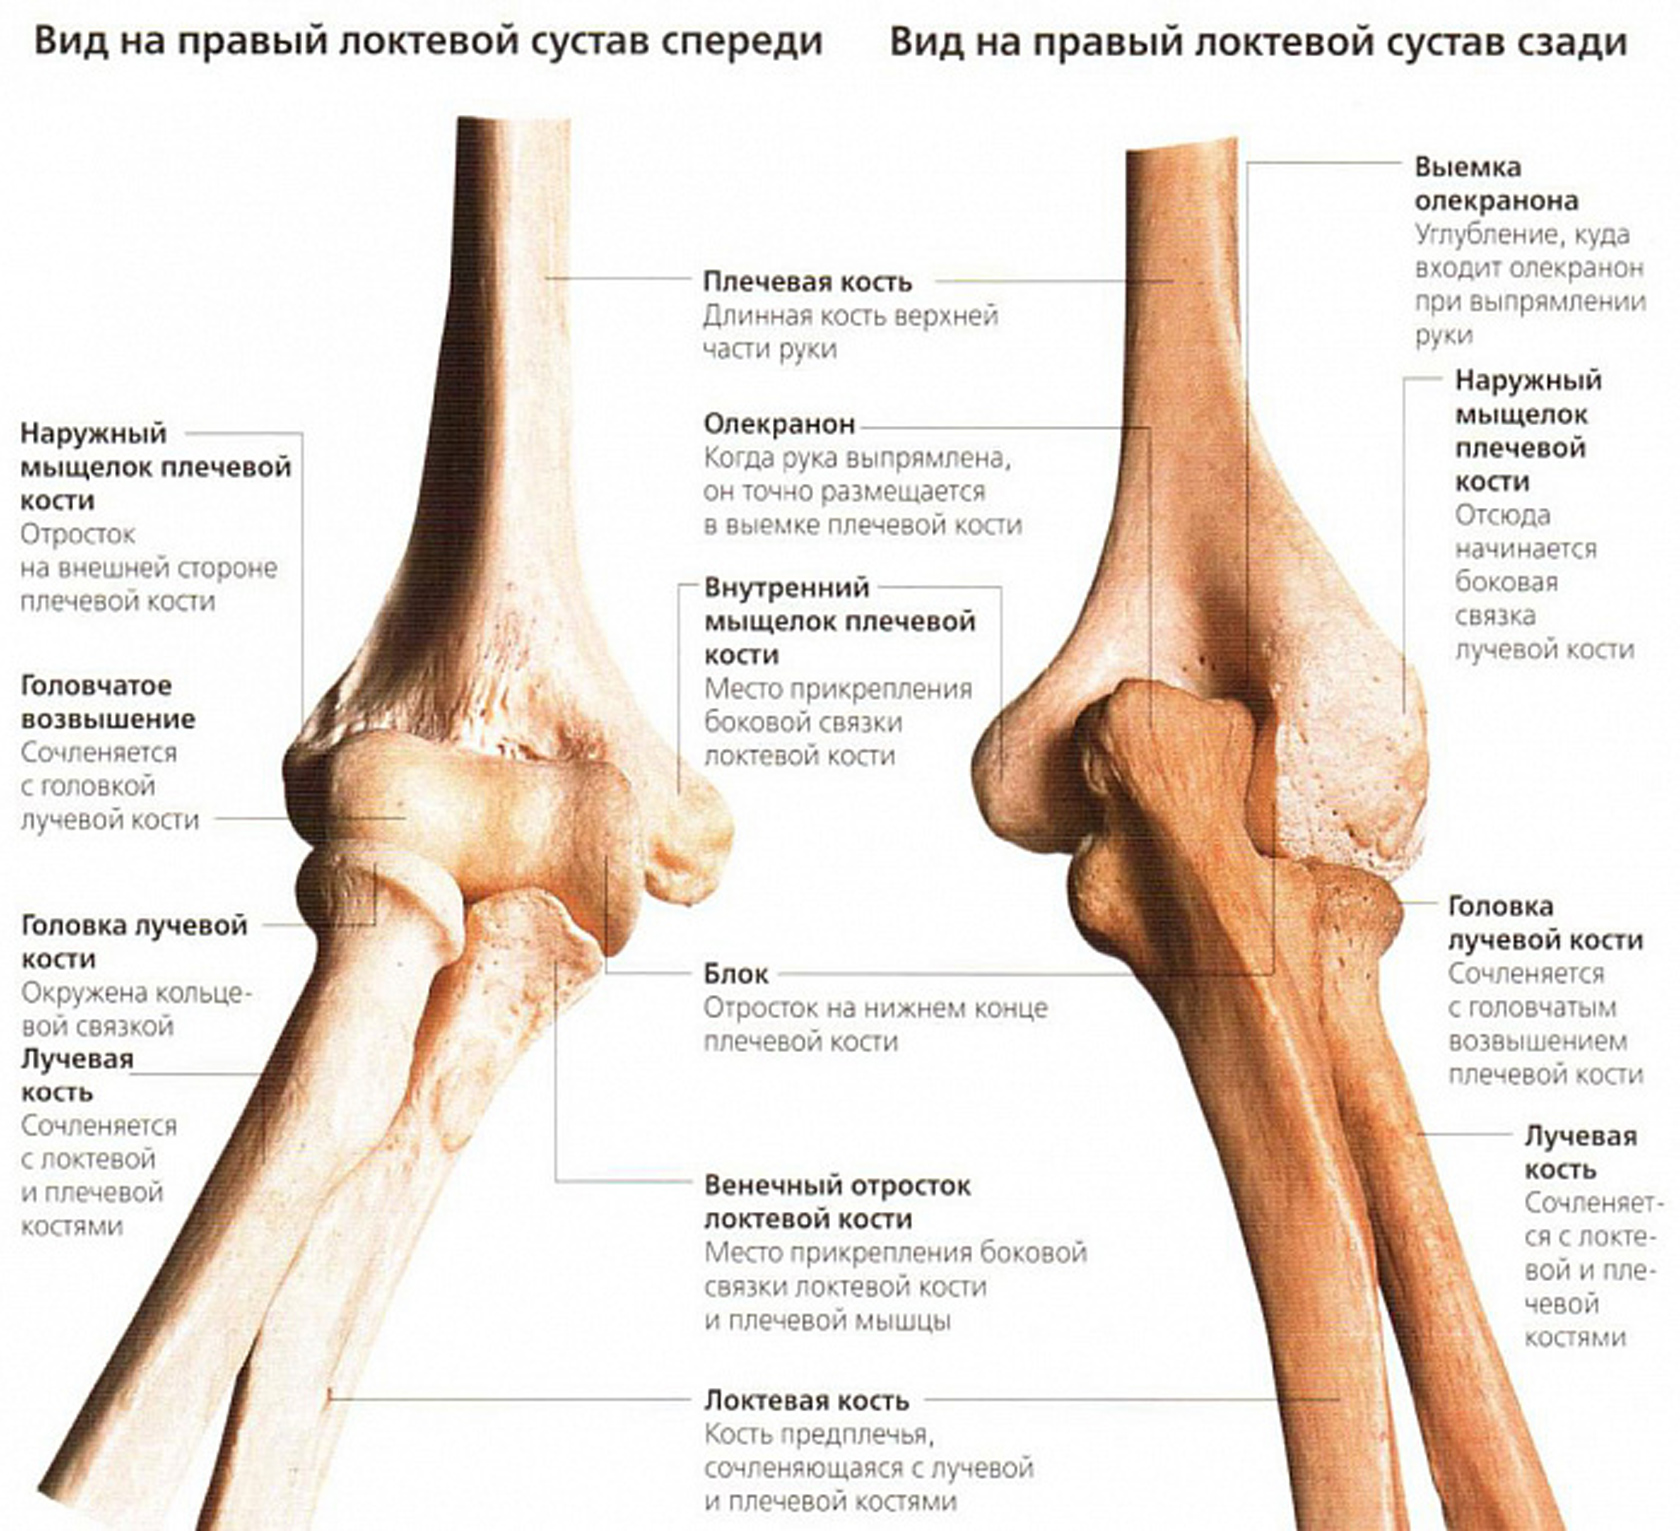 Мыщелок это кость. Локтевой сустав анатомия строение кости. Венечный отросток локтевого сустава. Плечевая кость анатомия мыщелок. Кости составляющие локтевой сустав.